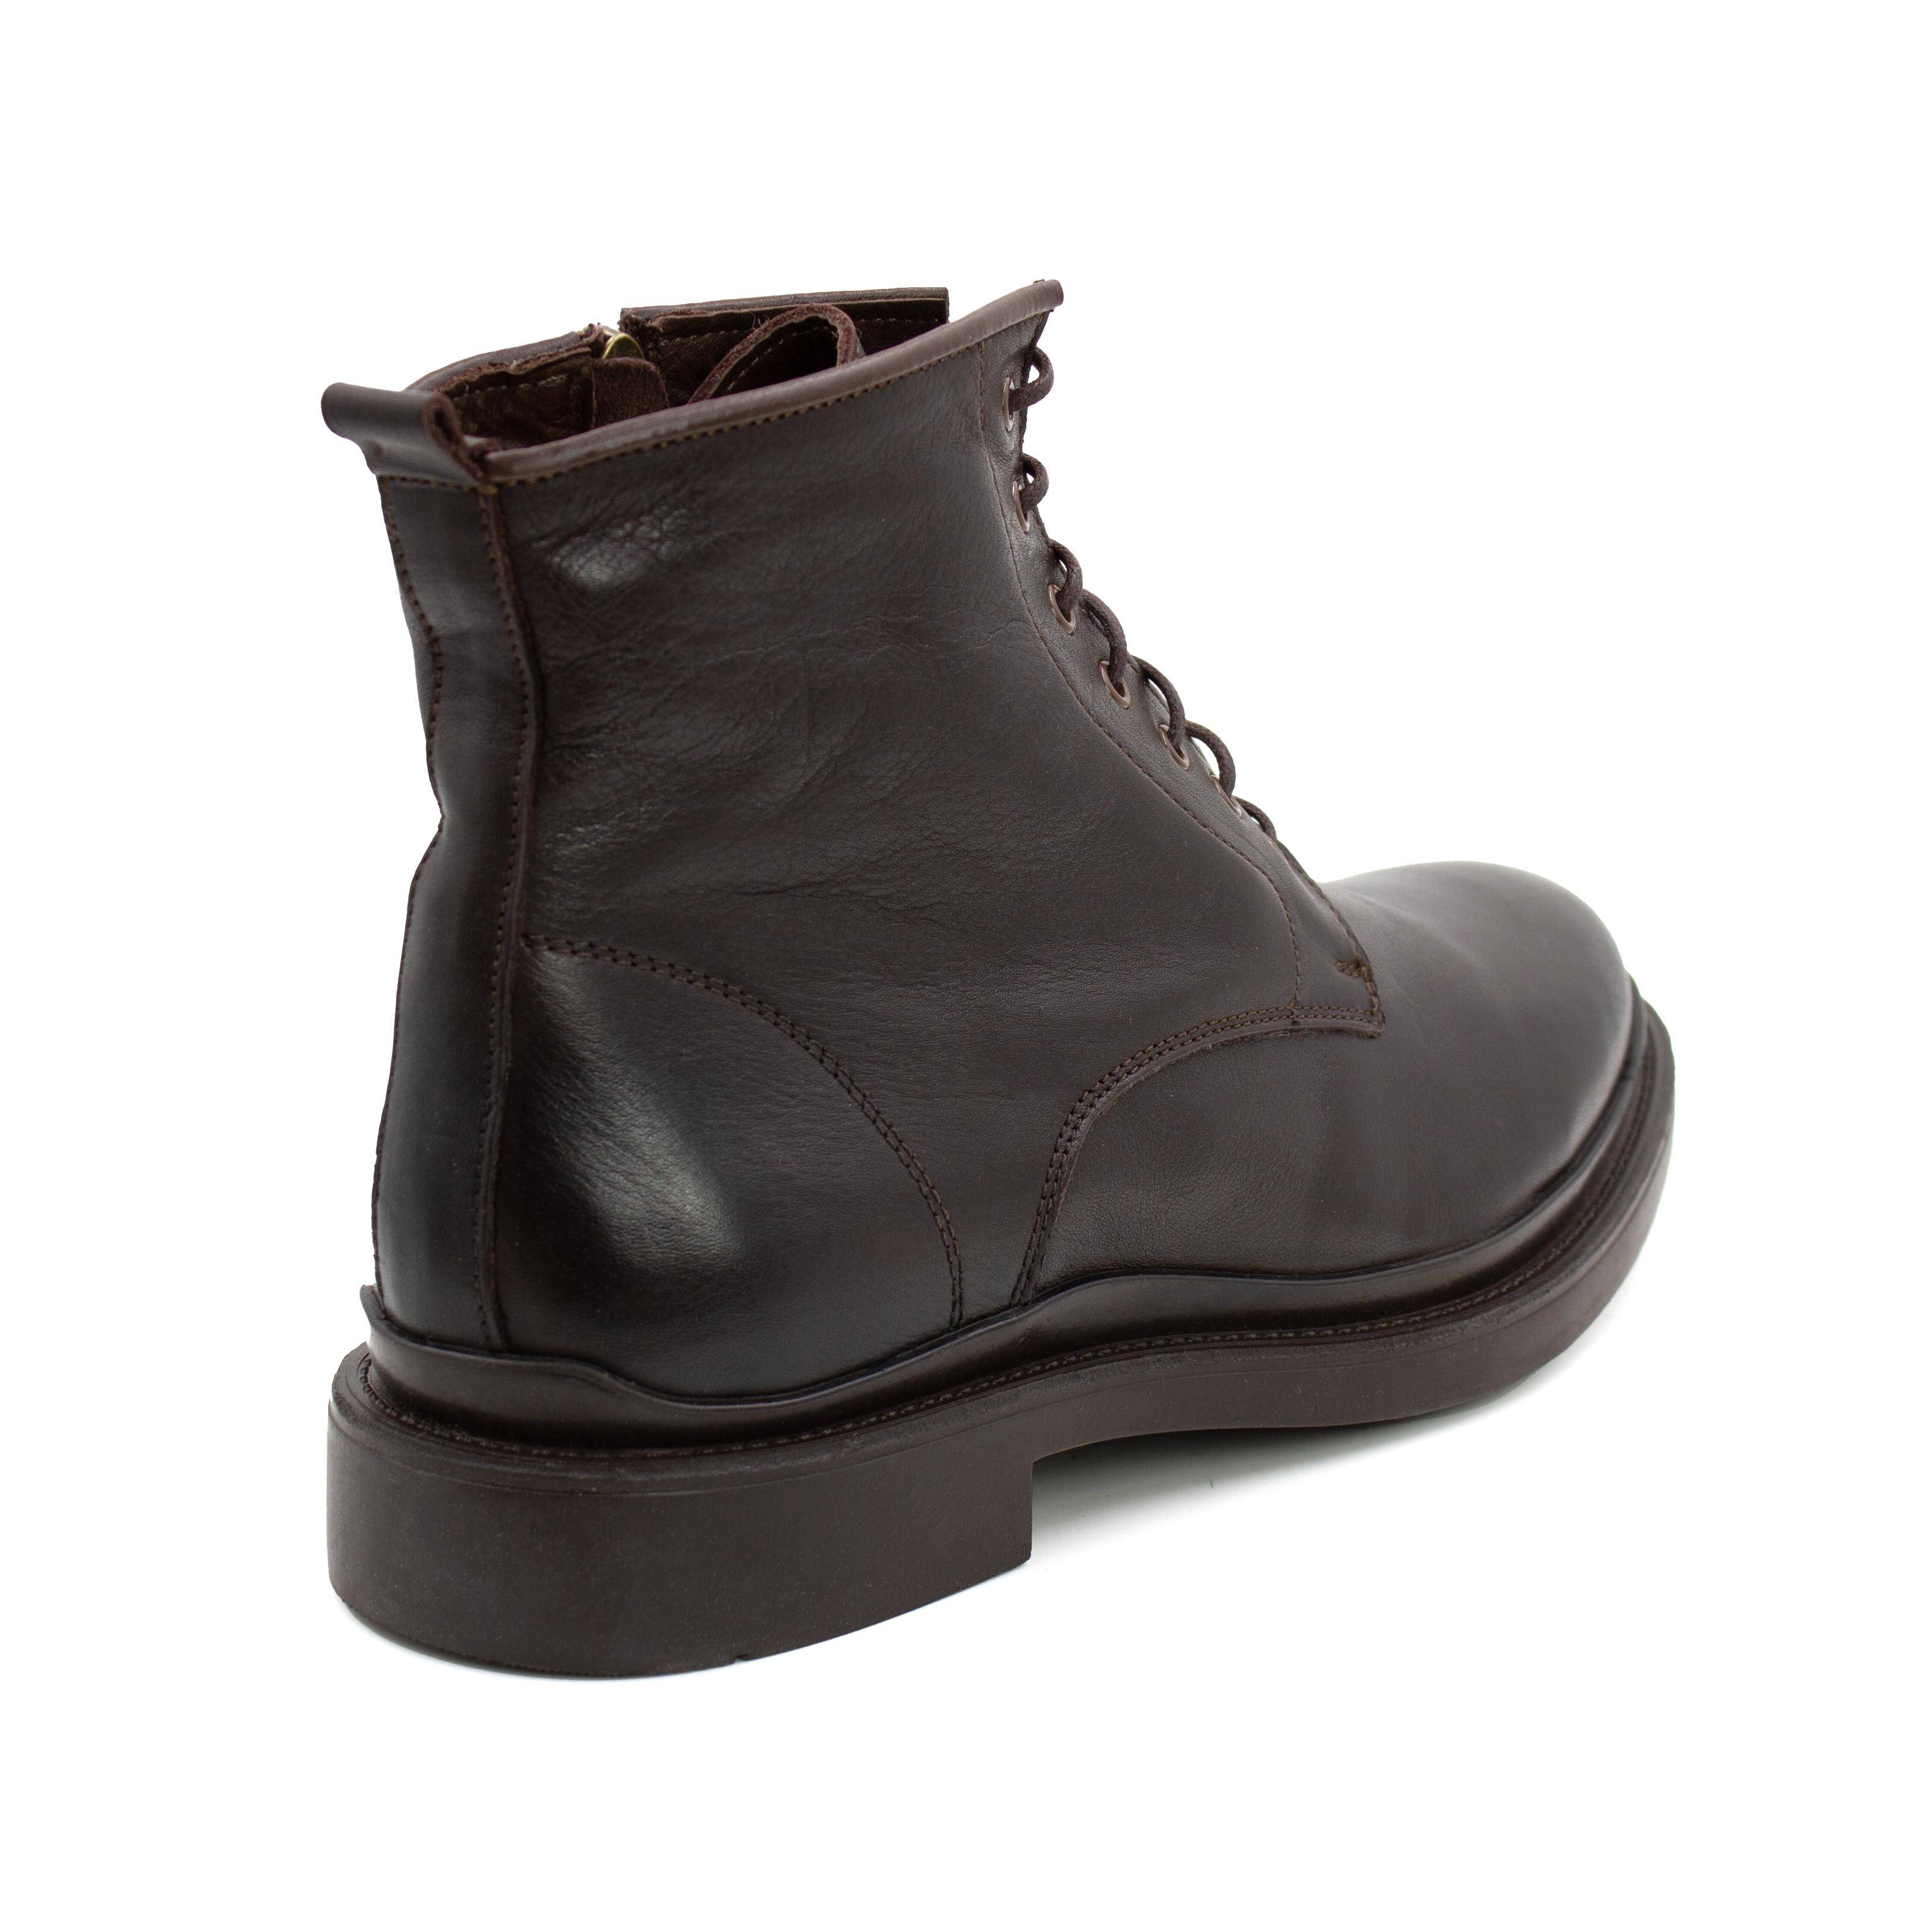 Мужские высокие ботинки Clarks (22203039-4610699), коричневые, цвет коричневый, размер 44 - фото 3